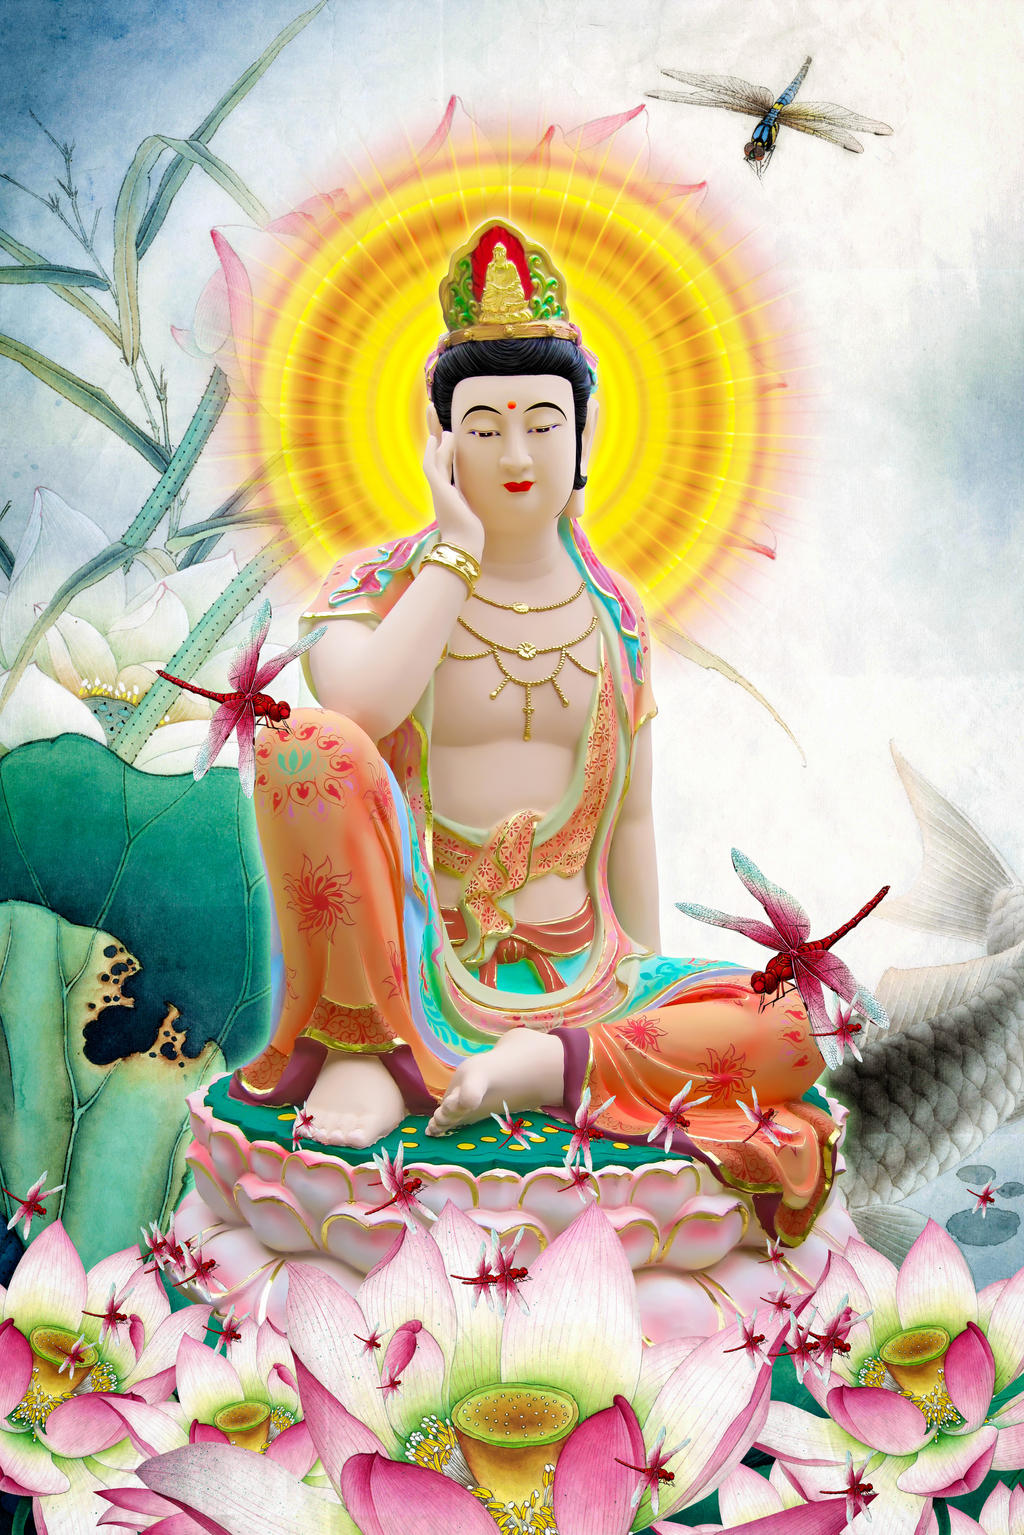 A Di Da Phat Quan The Am Guanyin Buddha: Tìm thấy giải pháp cho tâm hồn và cuộc sống của bạn trong hình ảnh A Di Đà Phật Quan Thế Âm của đức Phật Quan Thế Âm Bồ Tát.